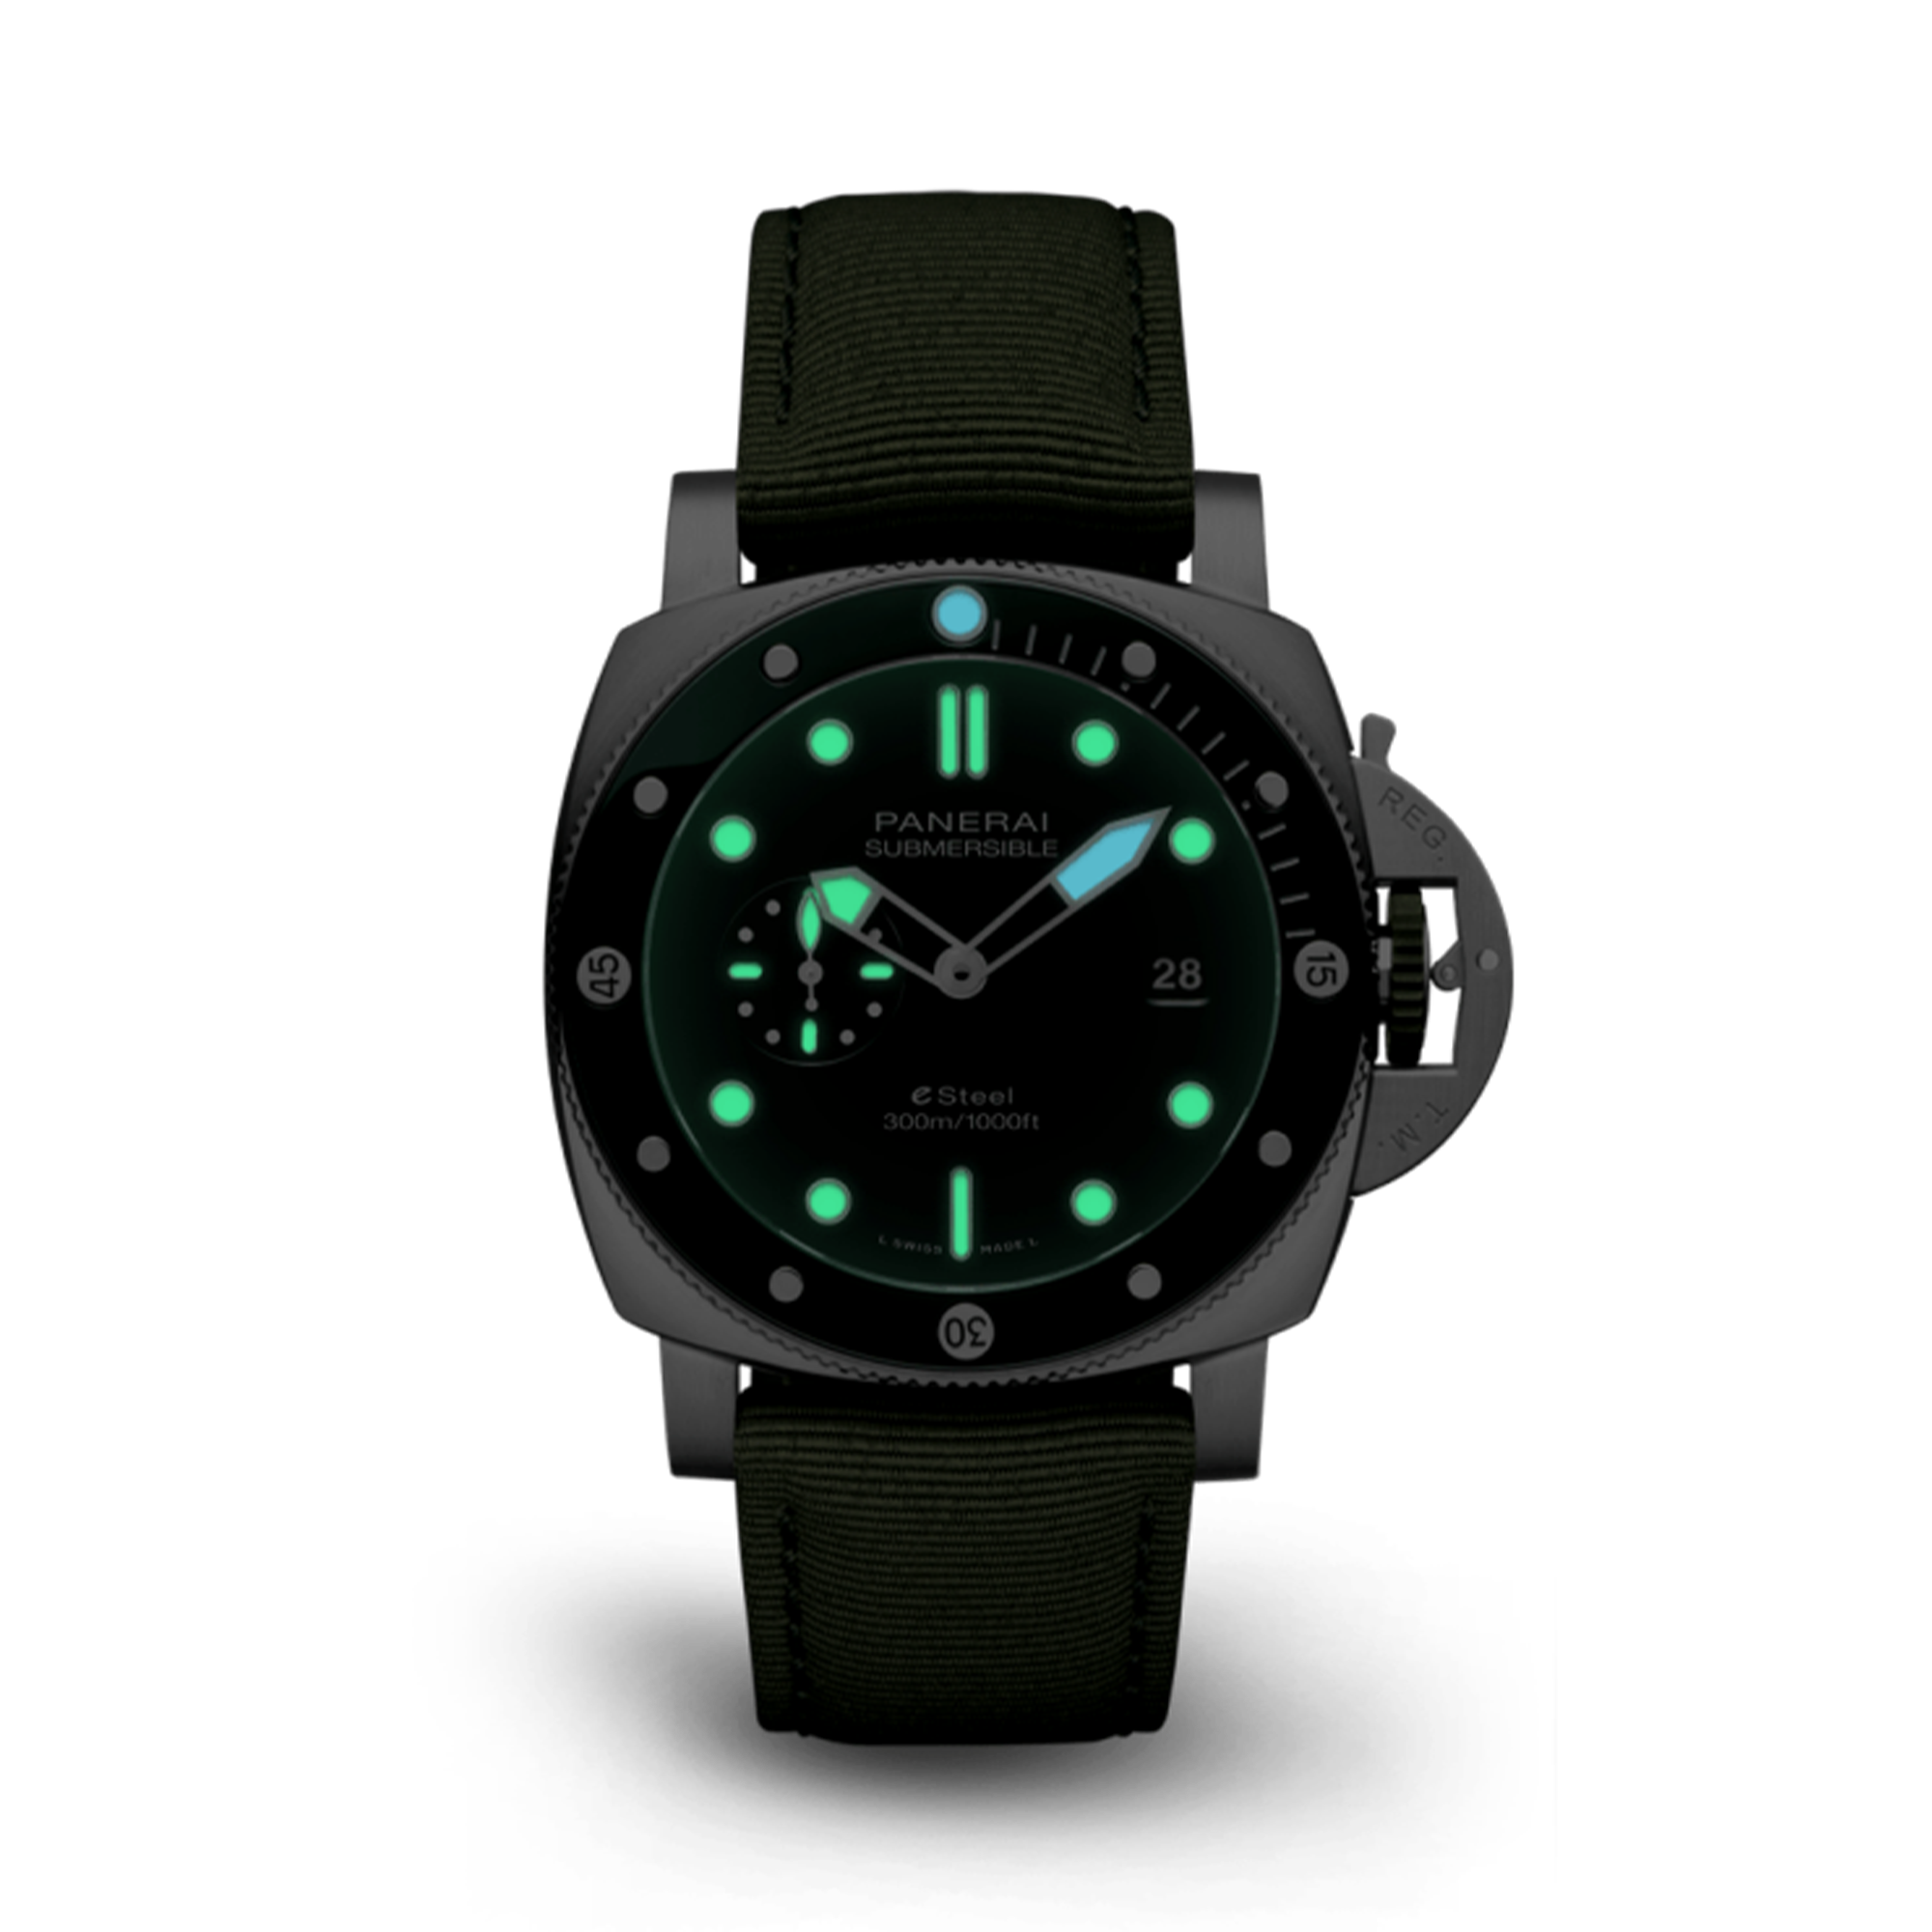 Panerai Submersible QuarantaQuattro ESteel™ Verde Smeraldo 44mm, Green Dial, Baton Numerals_3